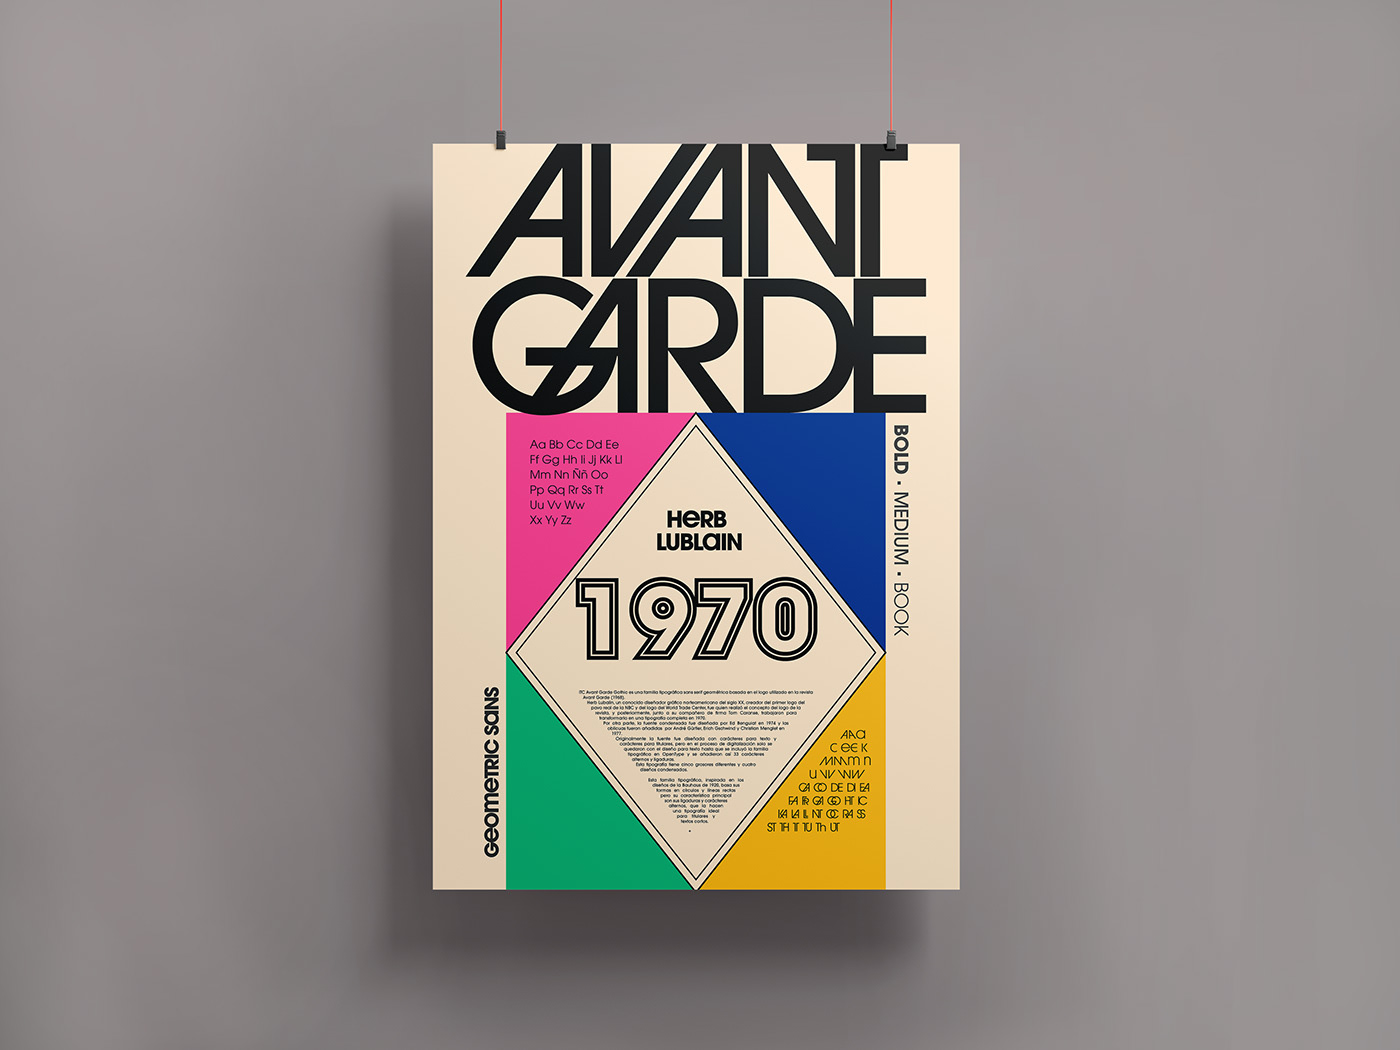 design Digital Art  itcavantgarde poster typography   vector